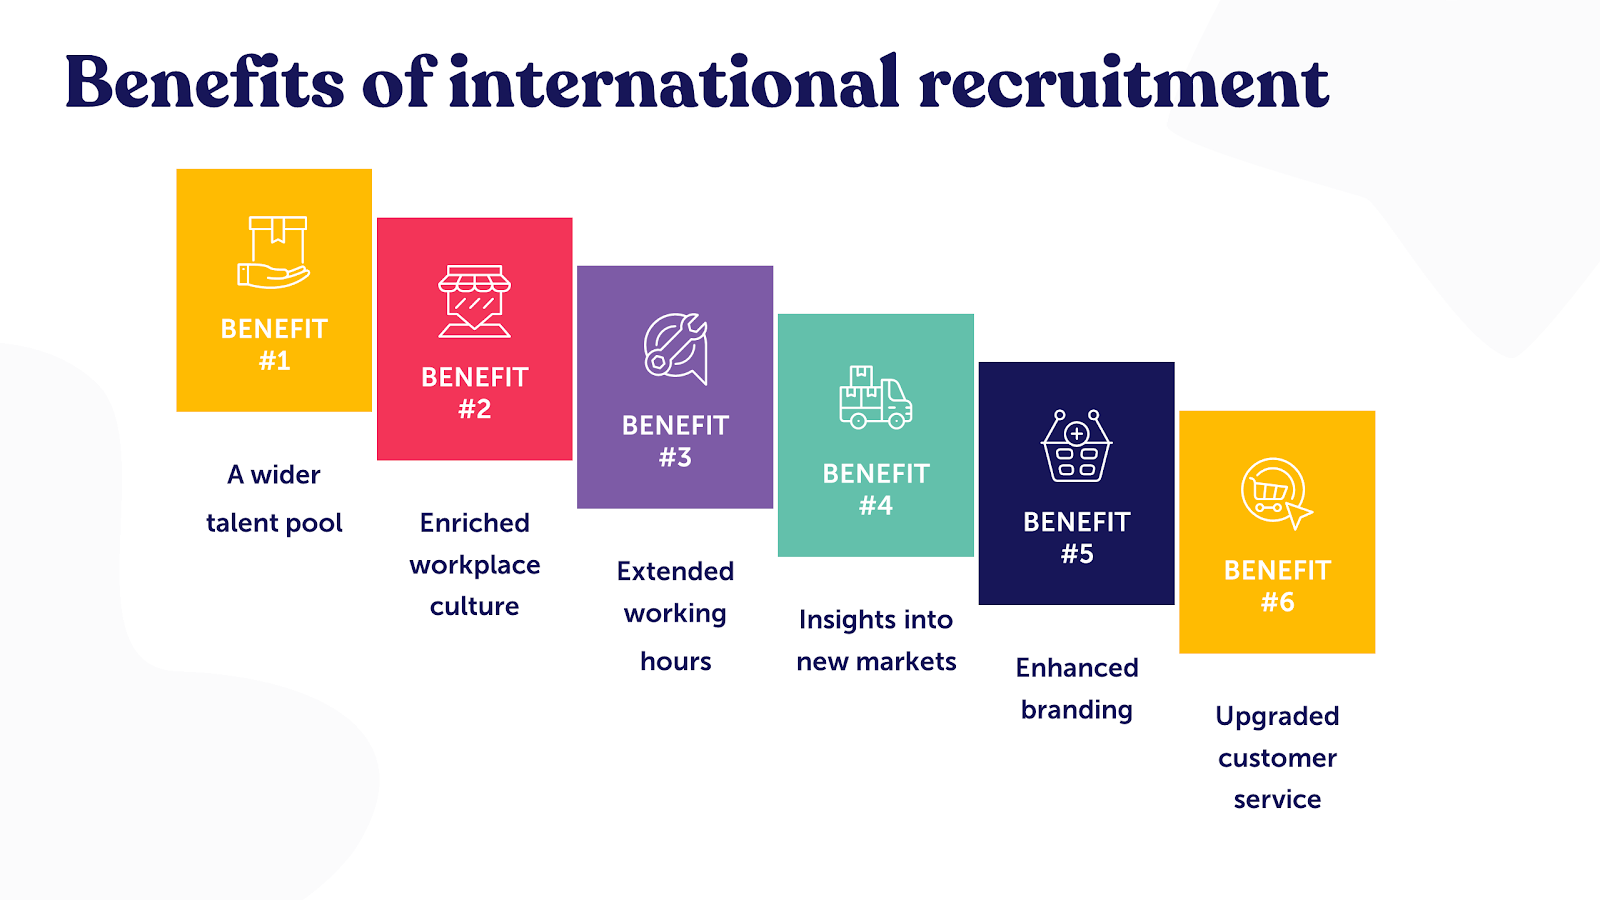 Benifits of international recruitment explained